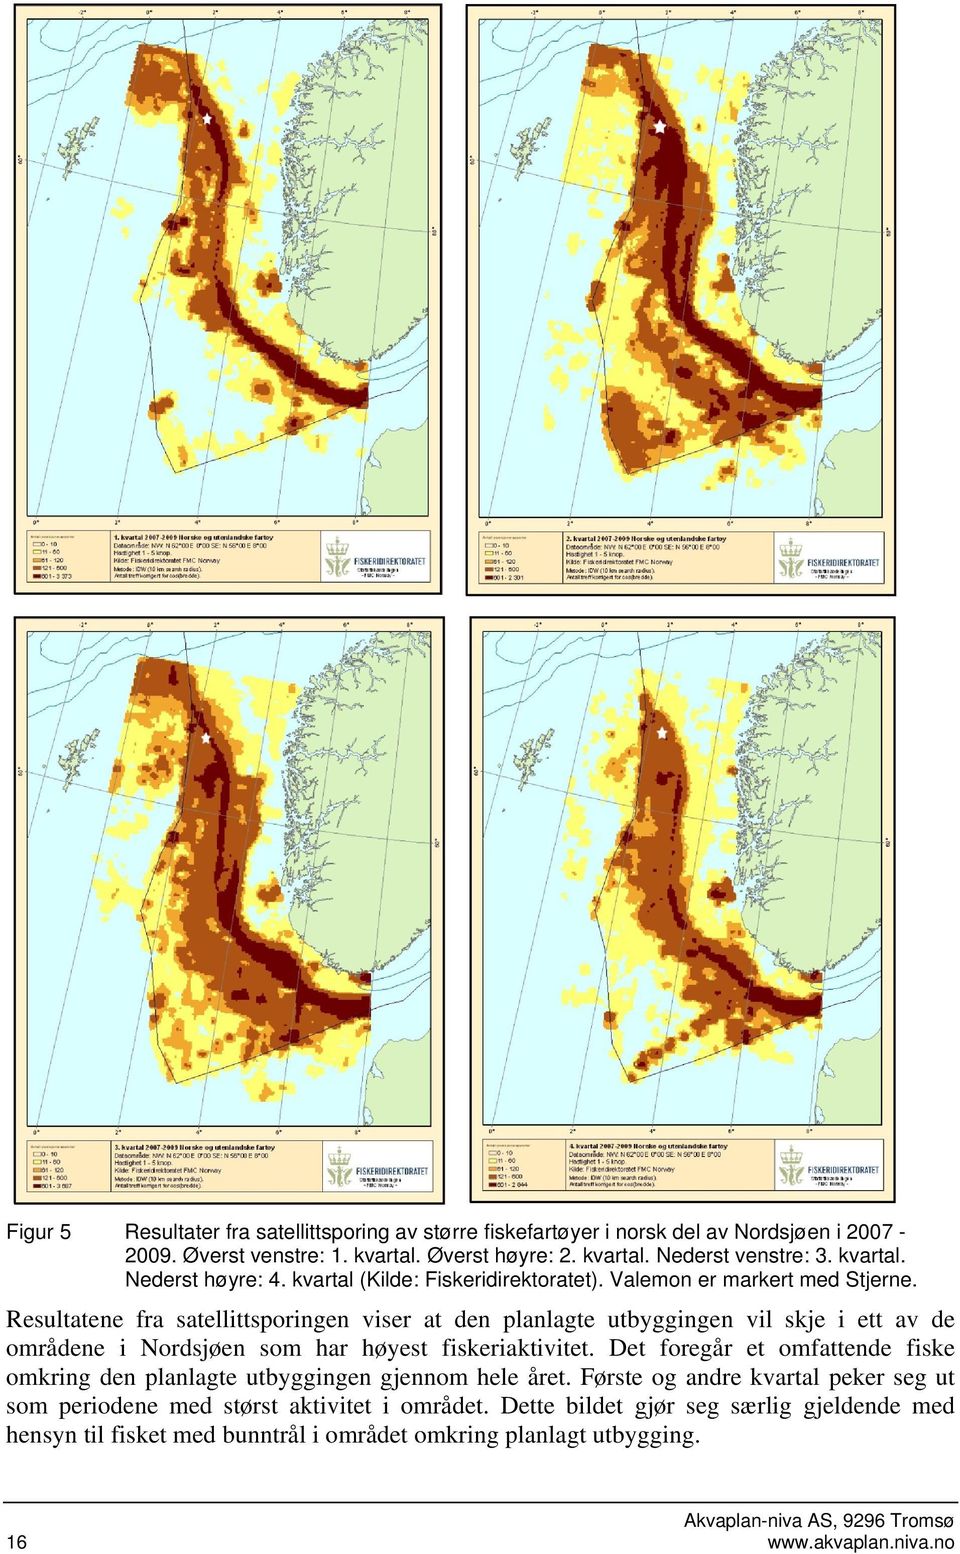 Resultatene fra satellittsporingen viser at den planlagte utbyggingen vil skje i ett av de områdene i Nordsjøen som har høyest fiskeriaktivitet.